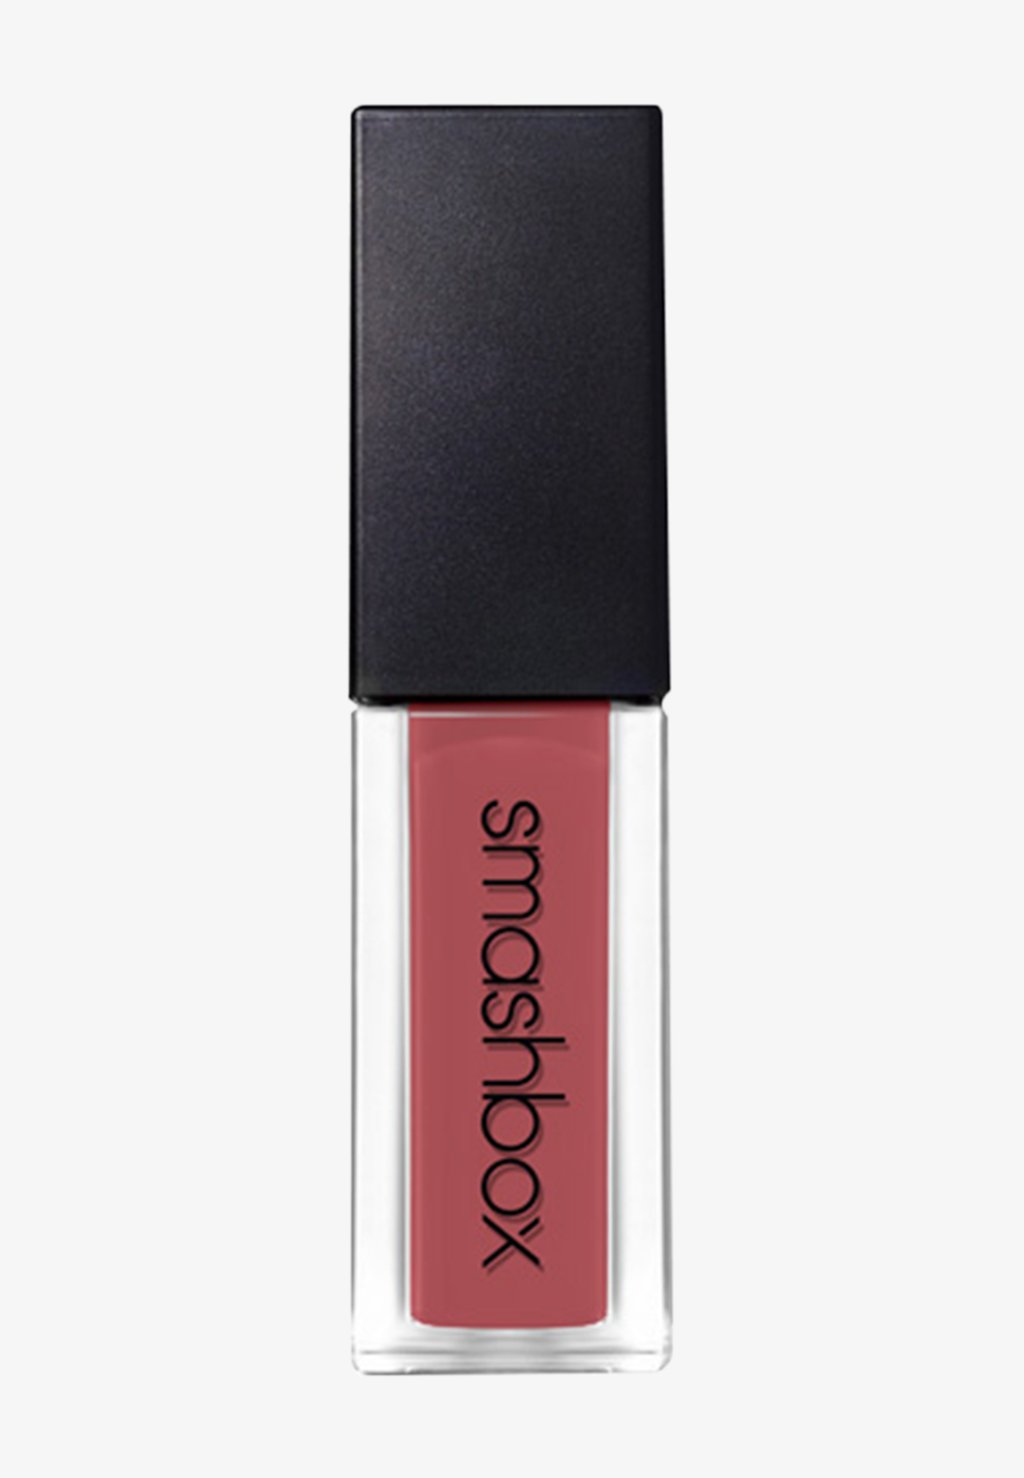 Жидкая помада ALWAYS ON LIQUID LIPSTICK Smashbox, цвет gula-bae smashbox always on liquid lipstick limited edition